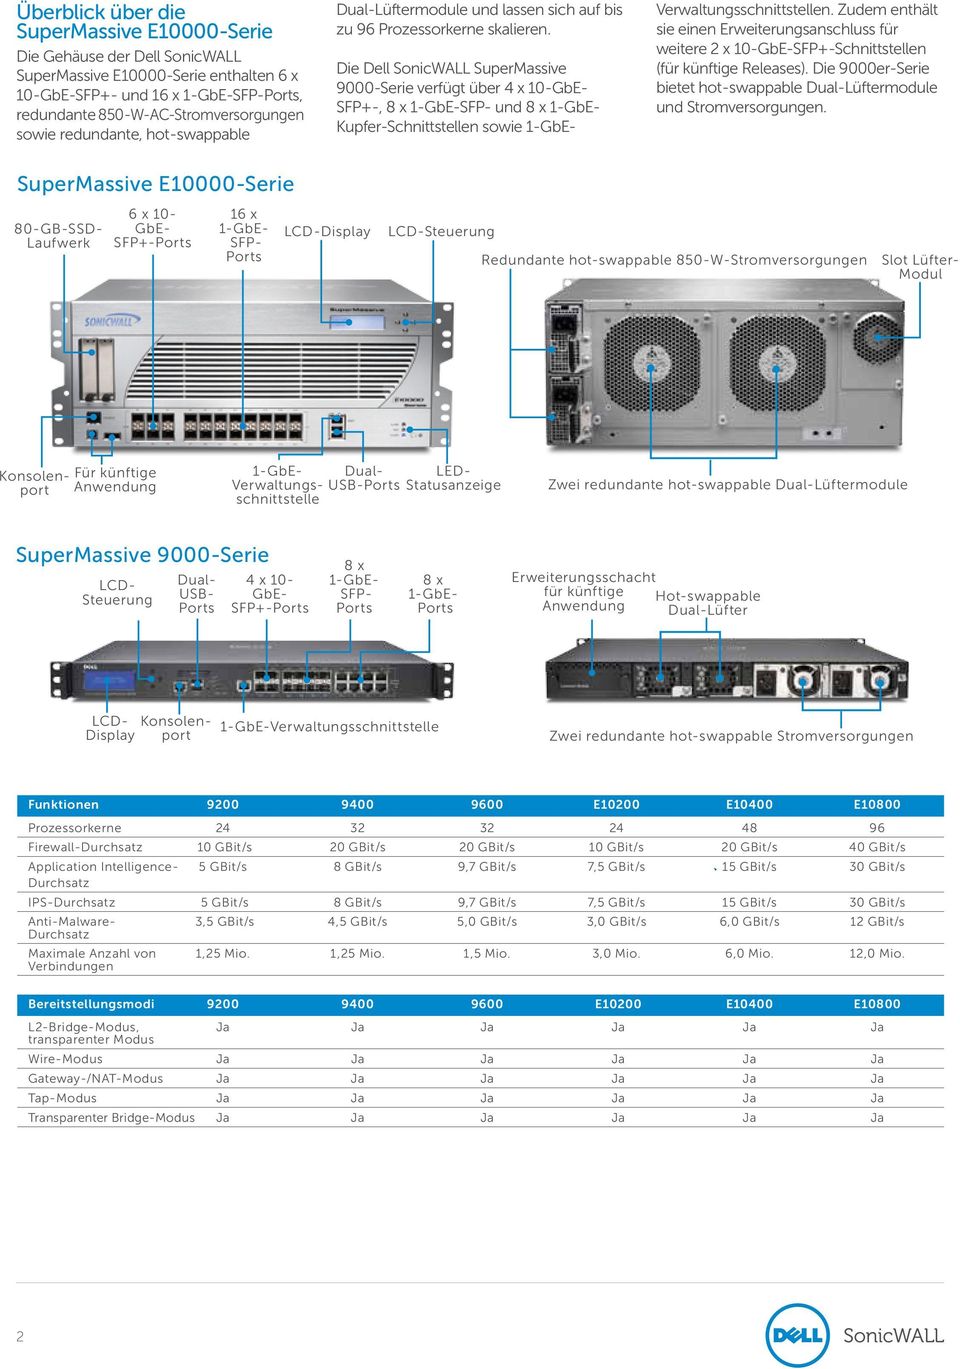 Die Dell SonicWALL SuperMassive 9000-Serie verfügt über 4 x 10-GbE- SFP+-, 8 x 1-GbE-SFP- und 8 x 1-GbE- Kupfer-Schnittstellen sowie 1-GbE- Verwaltungsschnittstellen.